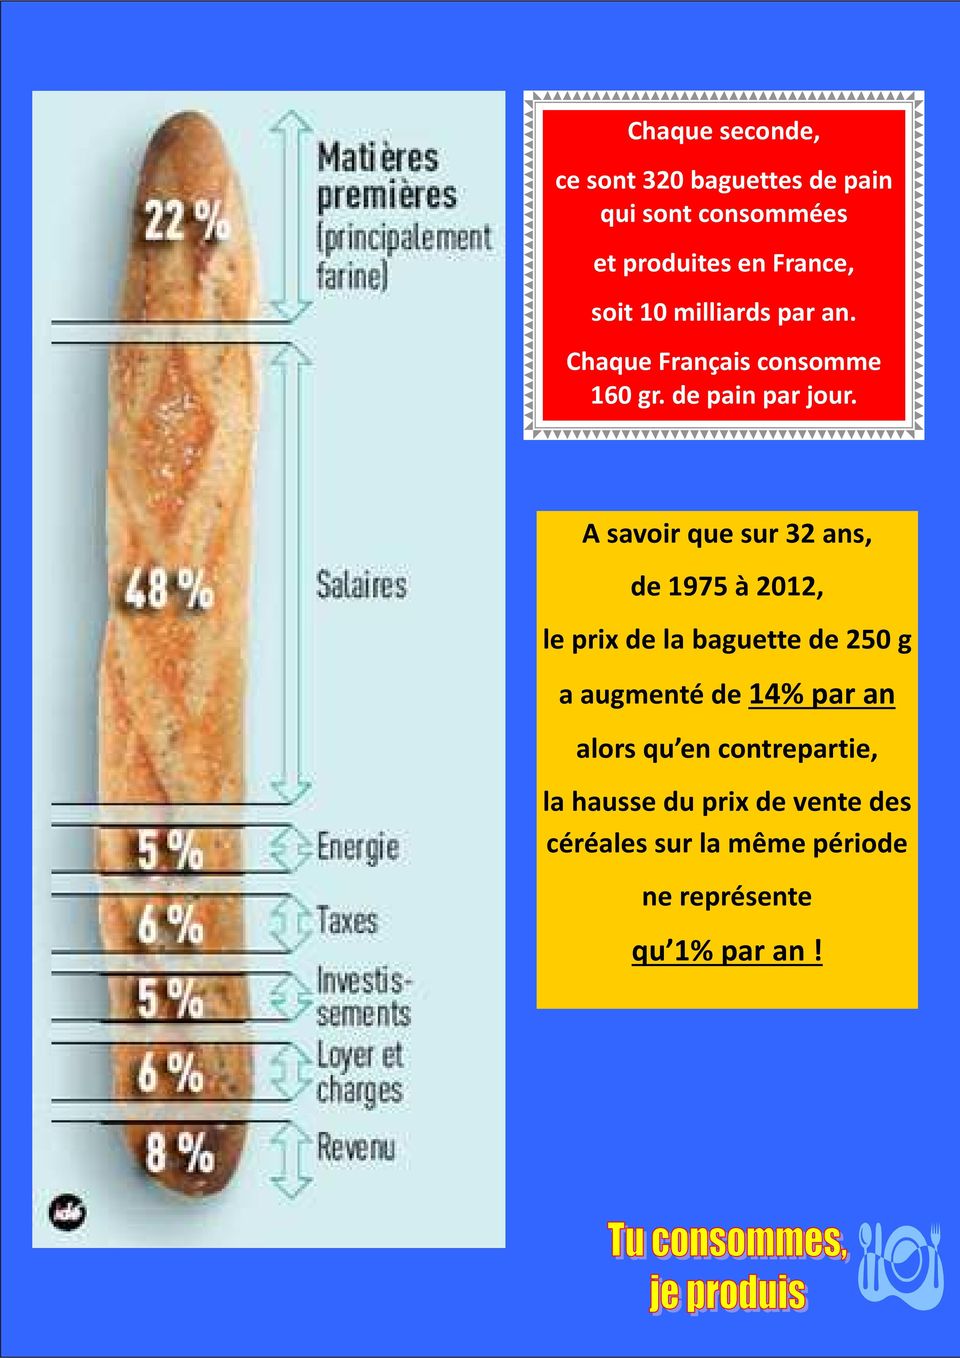 A savoir que sur 32 ans, de 1975 à 2012, le prix de la baguette de 250 g a augmenté de 14% par